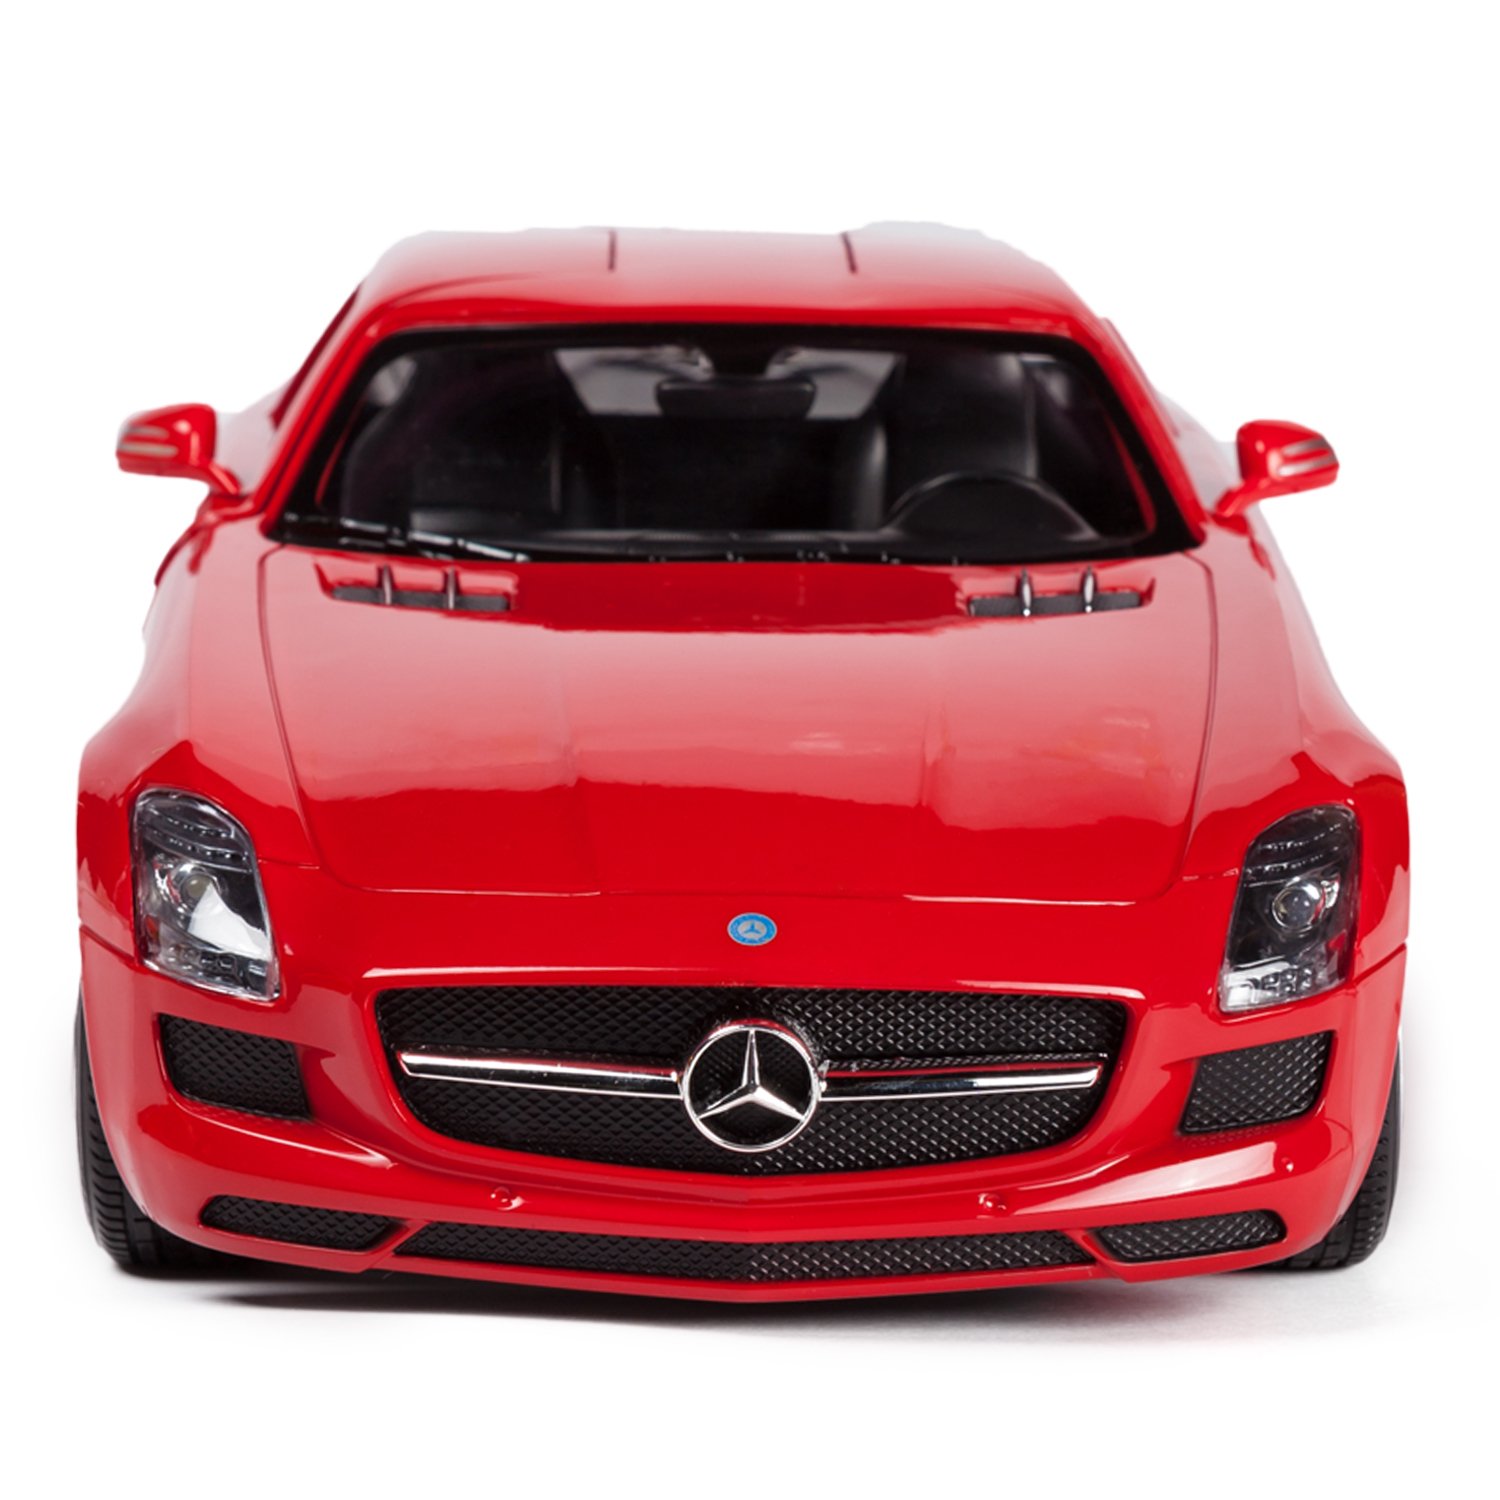 Машина на р/у – Mercedes SLS AMG, 1:24, 19 см, красный, белый, свет   